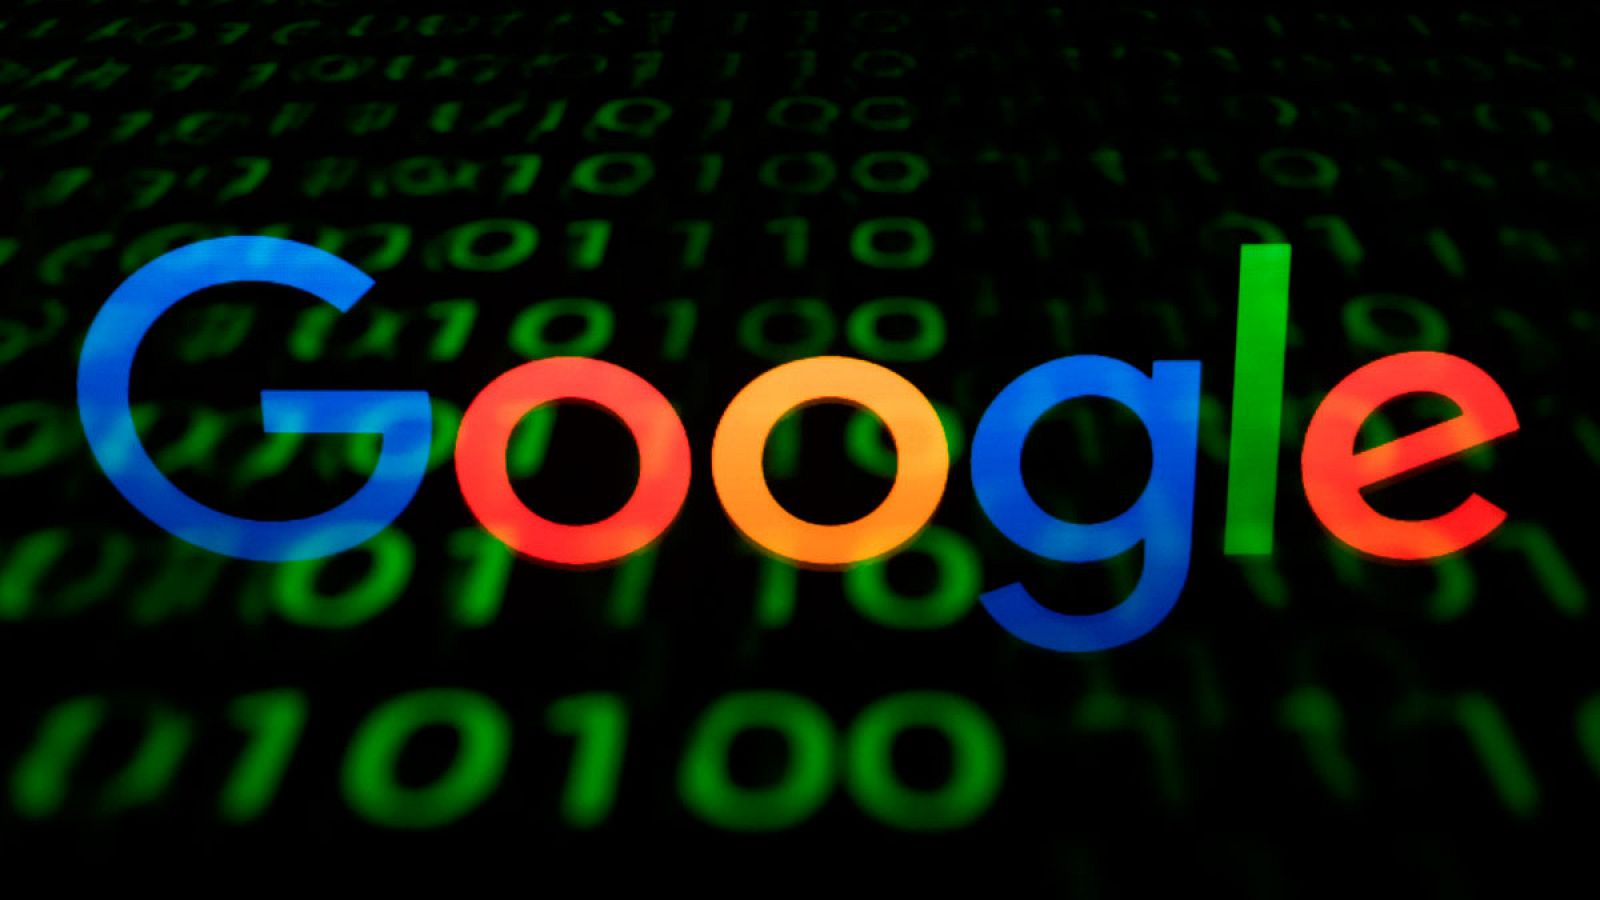 El buscador google.com se lanzó el 27 de septiembre de 1998, por lo que esta fecha se considera oficialmente como la de su aniversario.